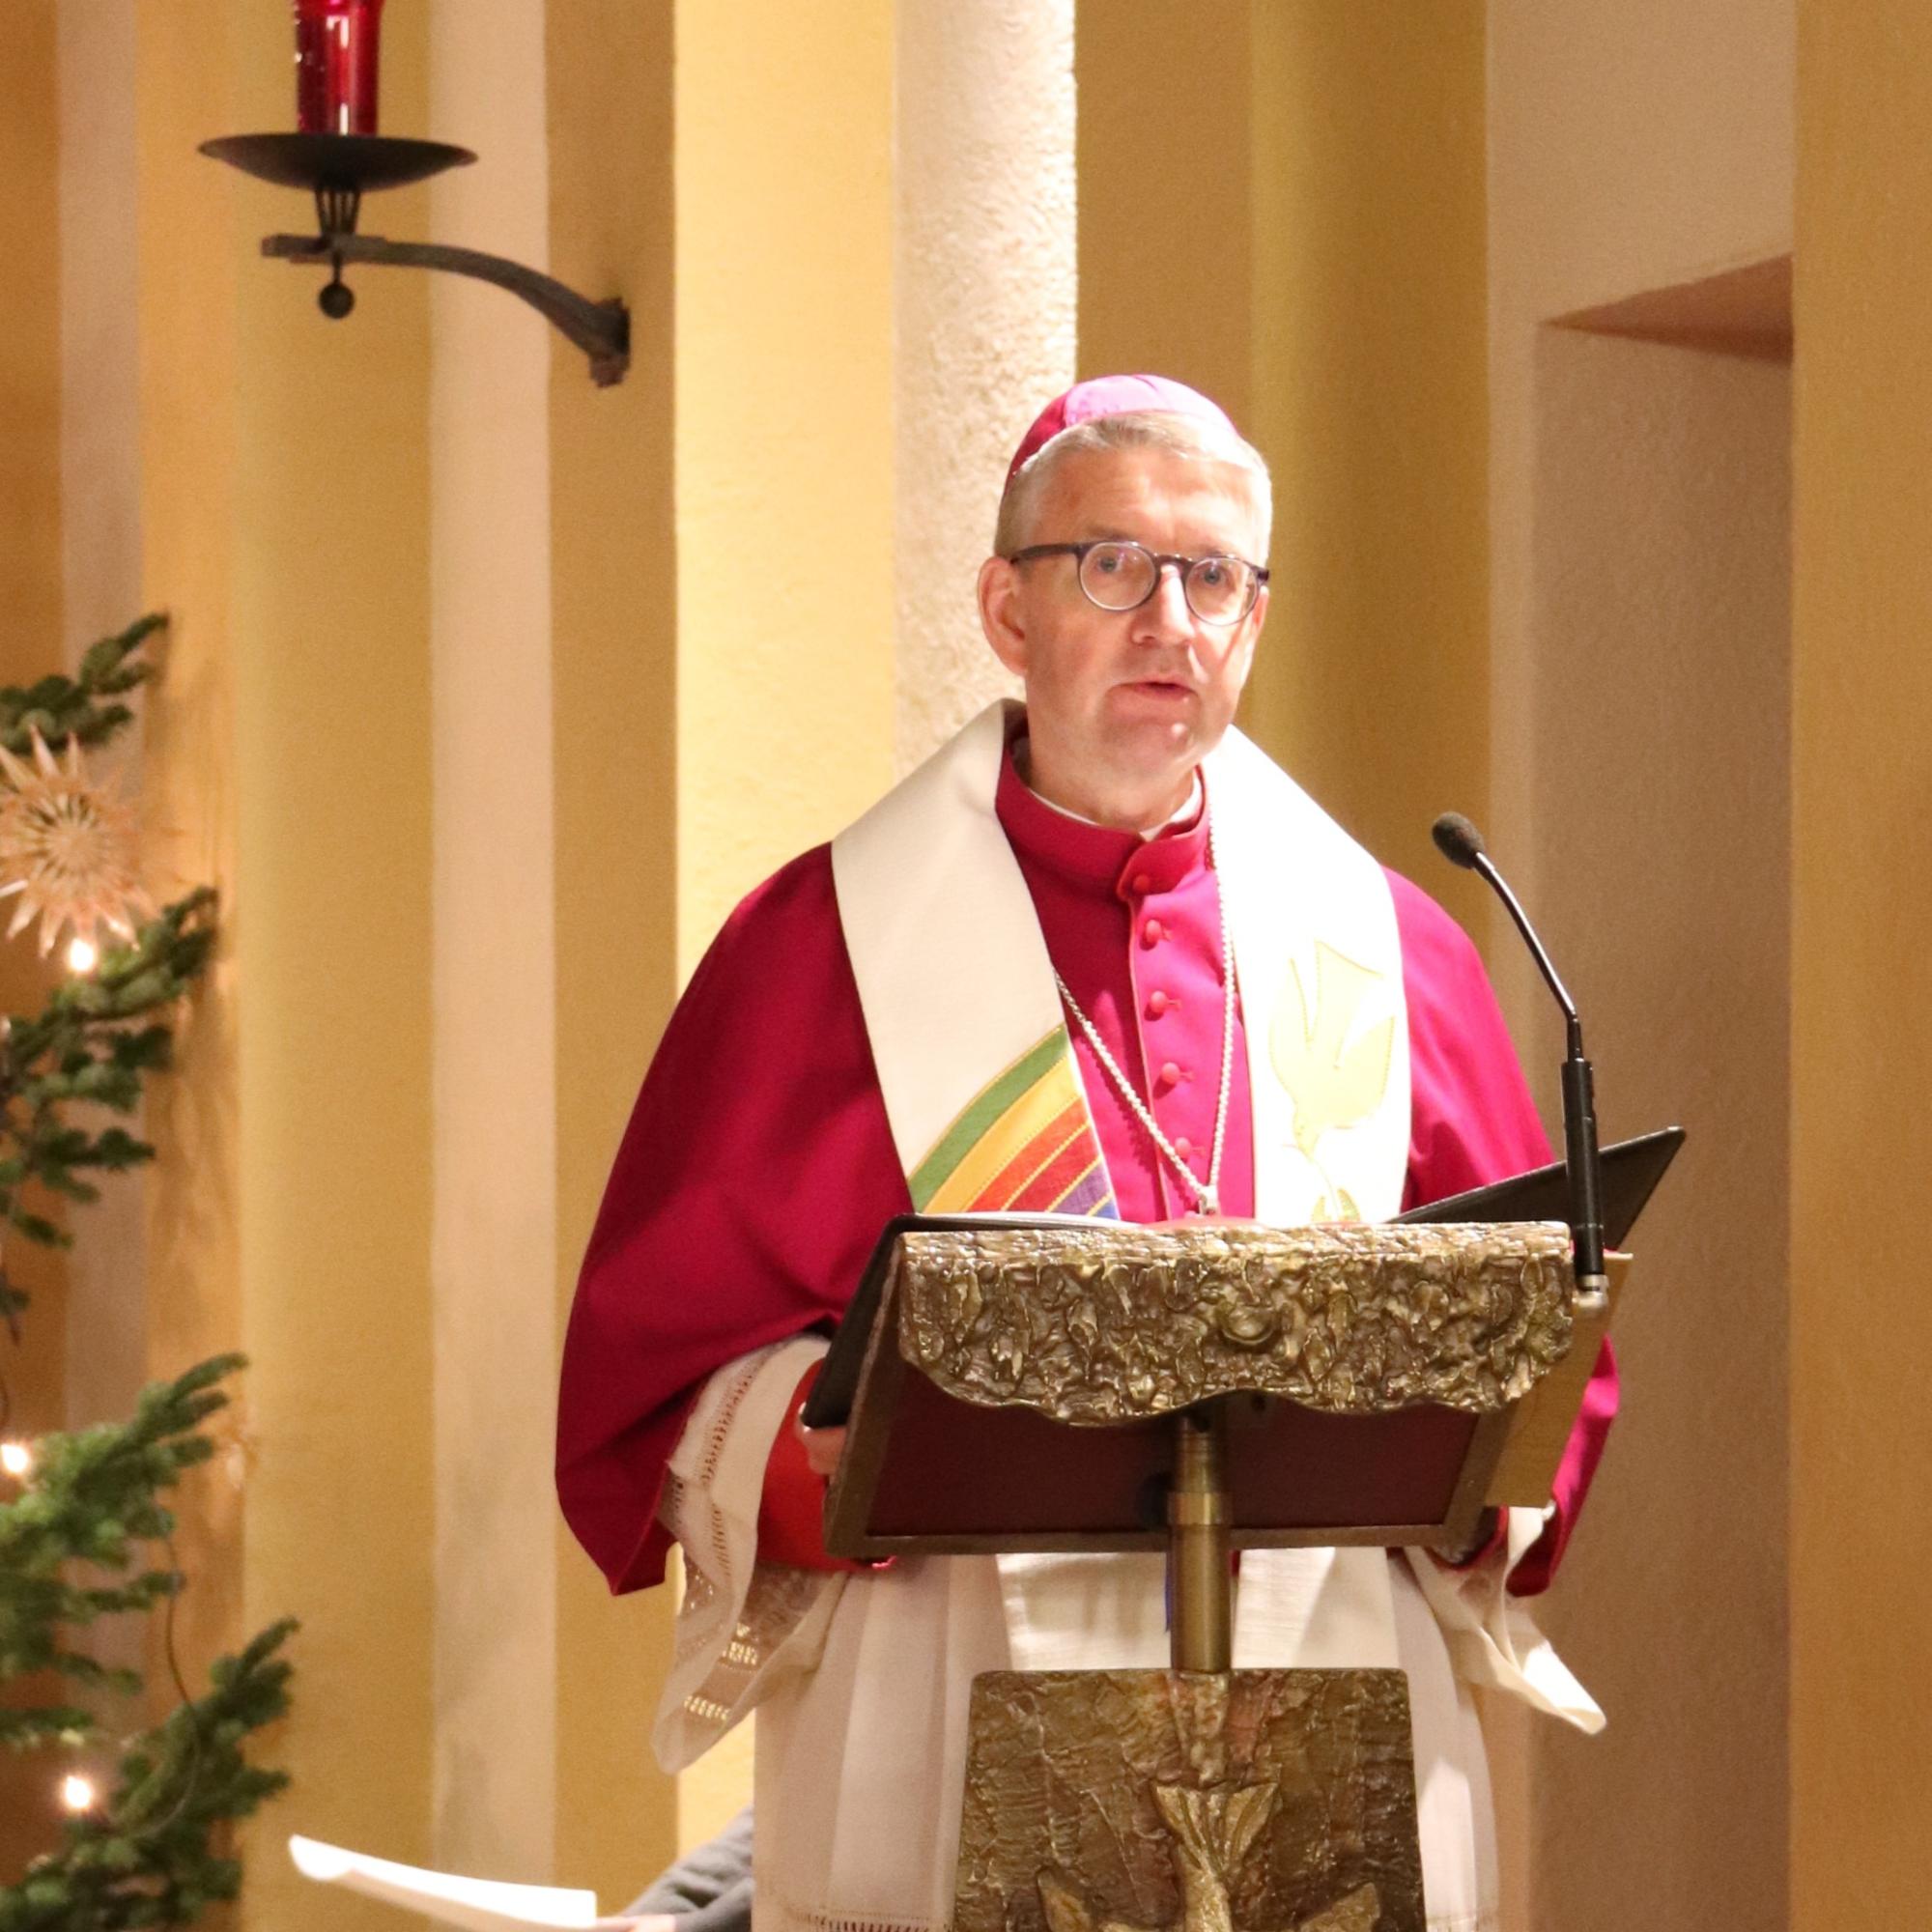 Bischof Peter Kohlgraf bei seiner Predigt zum Weltfriedenstag in der St. Walburga-Kirche in Groß-Gerau